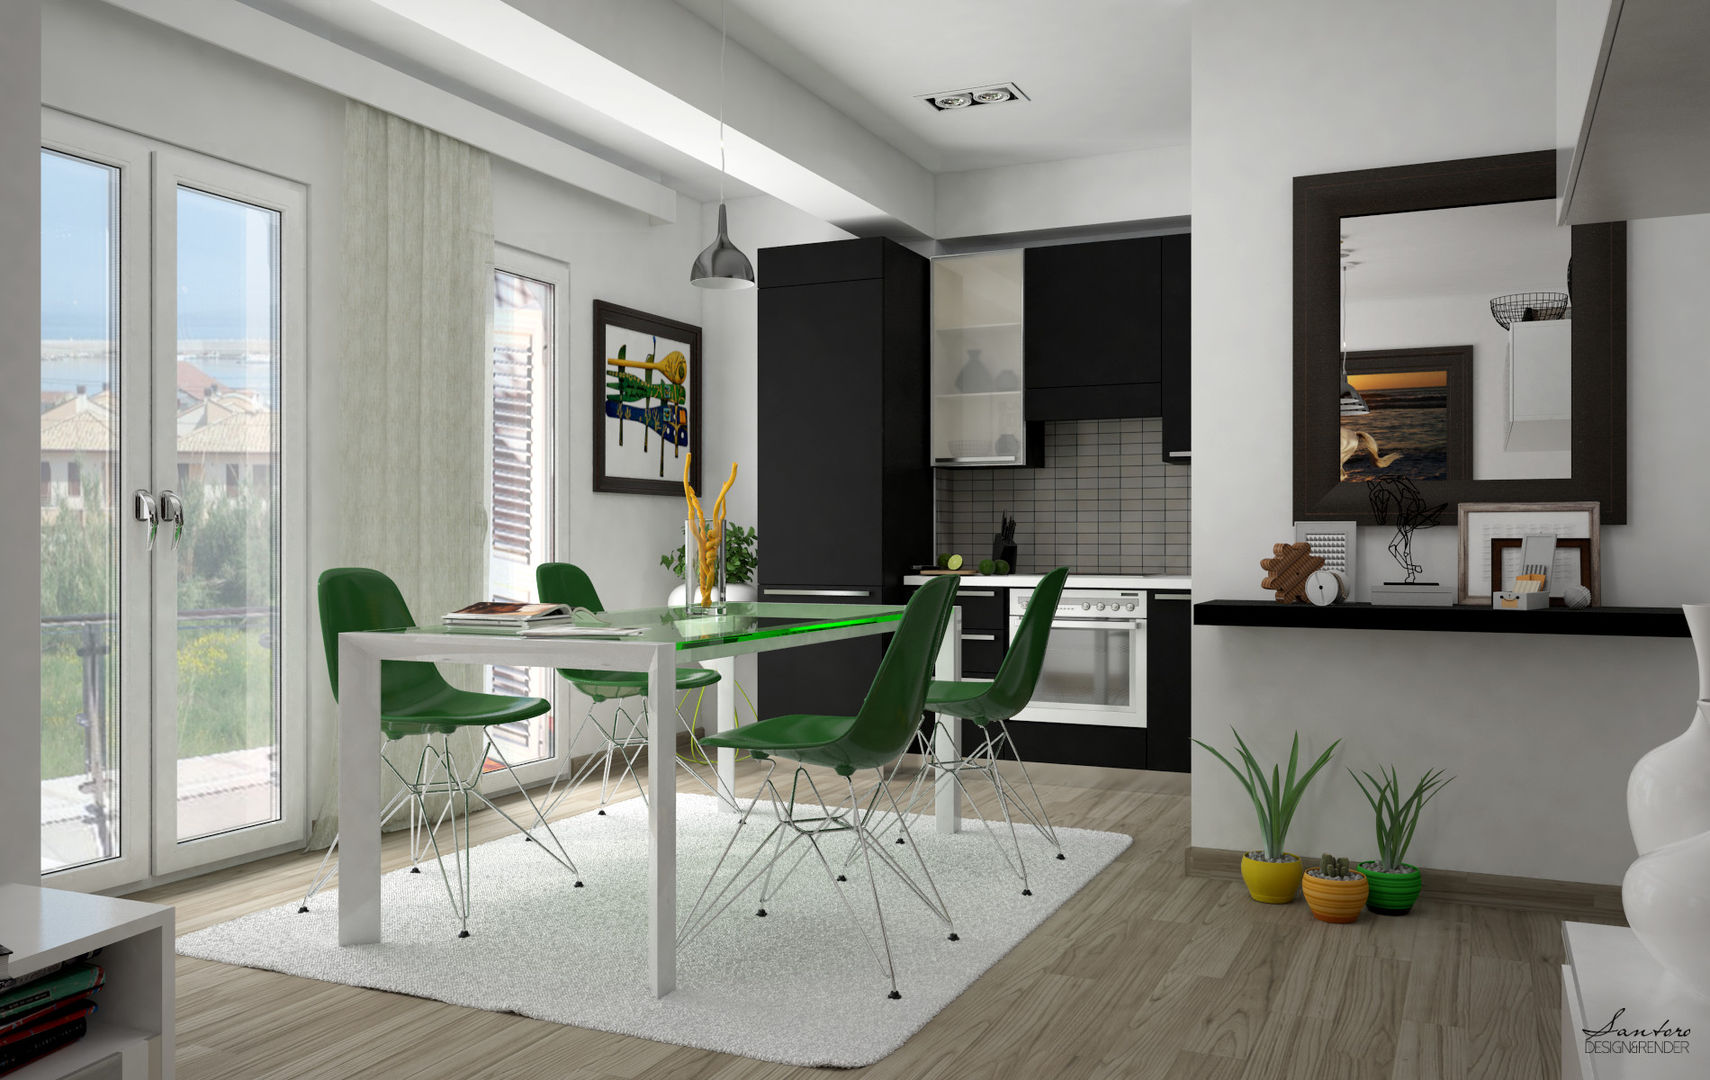 Design & Render livingroom – arredamento S.Agata Militello (ME) , Santoro Design Render Santoro Design Render Nhà bếp phong cách hiện đại